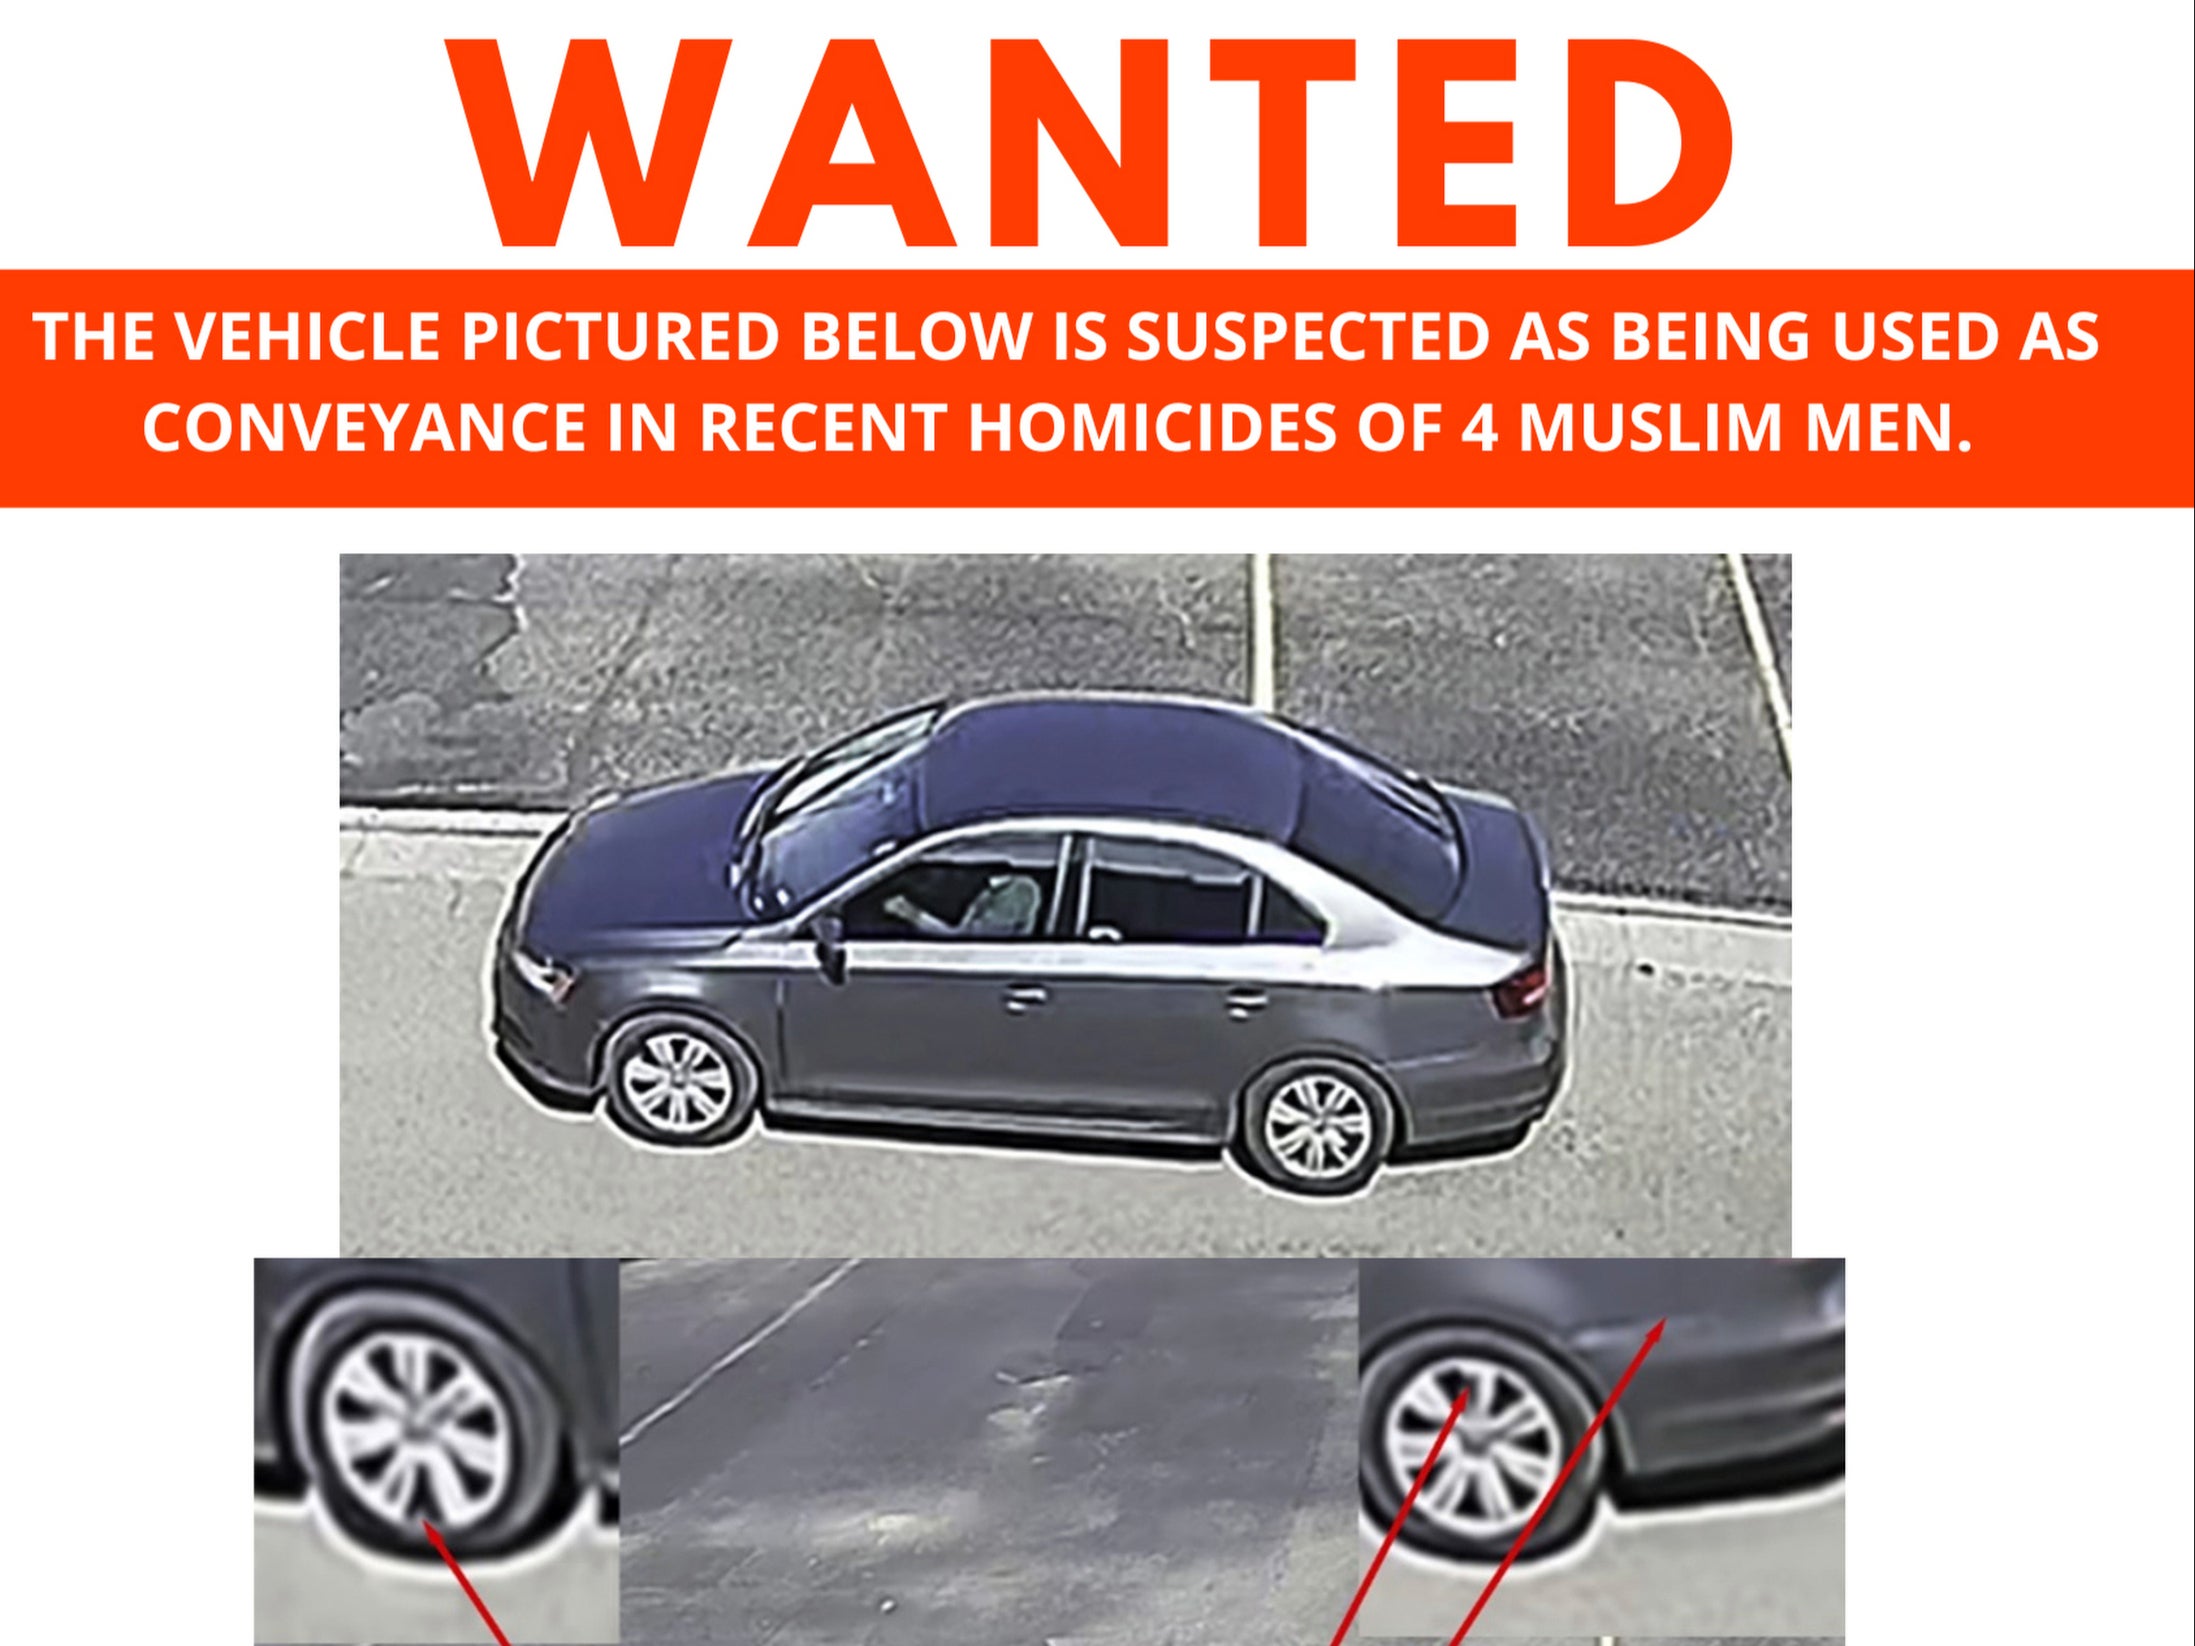 Este cartel de búsqueda publicado el domingo 7 de agosto por la policía de Albuquerque muestra un automóvil que se sospecha fue usado como transporte en los recientes homicidios de cuatro hombres musulmanes